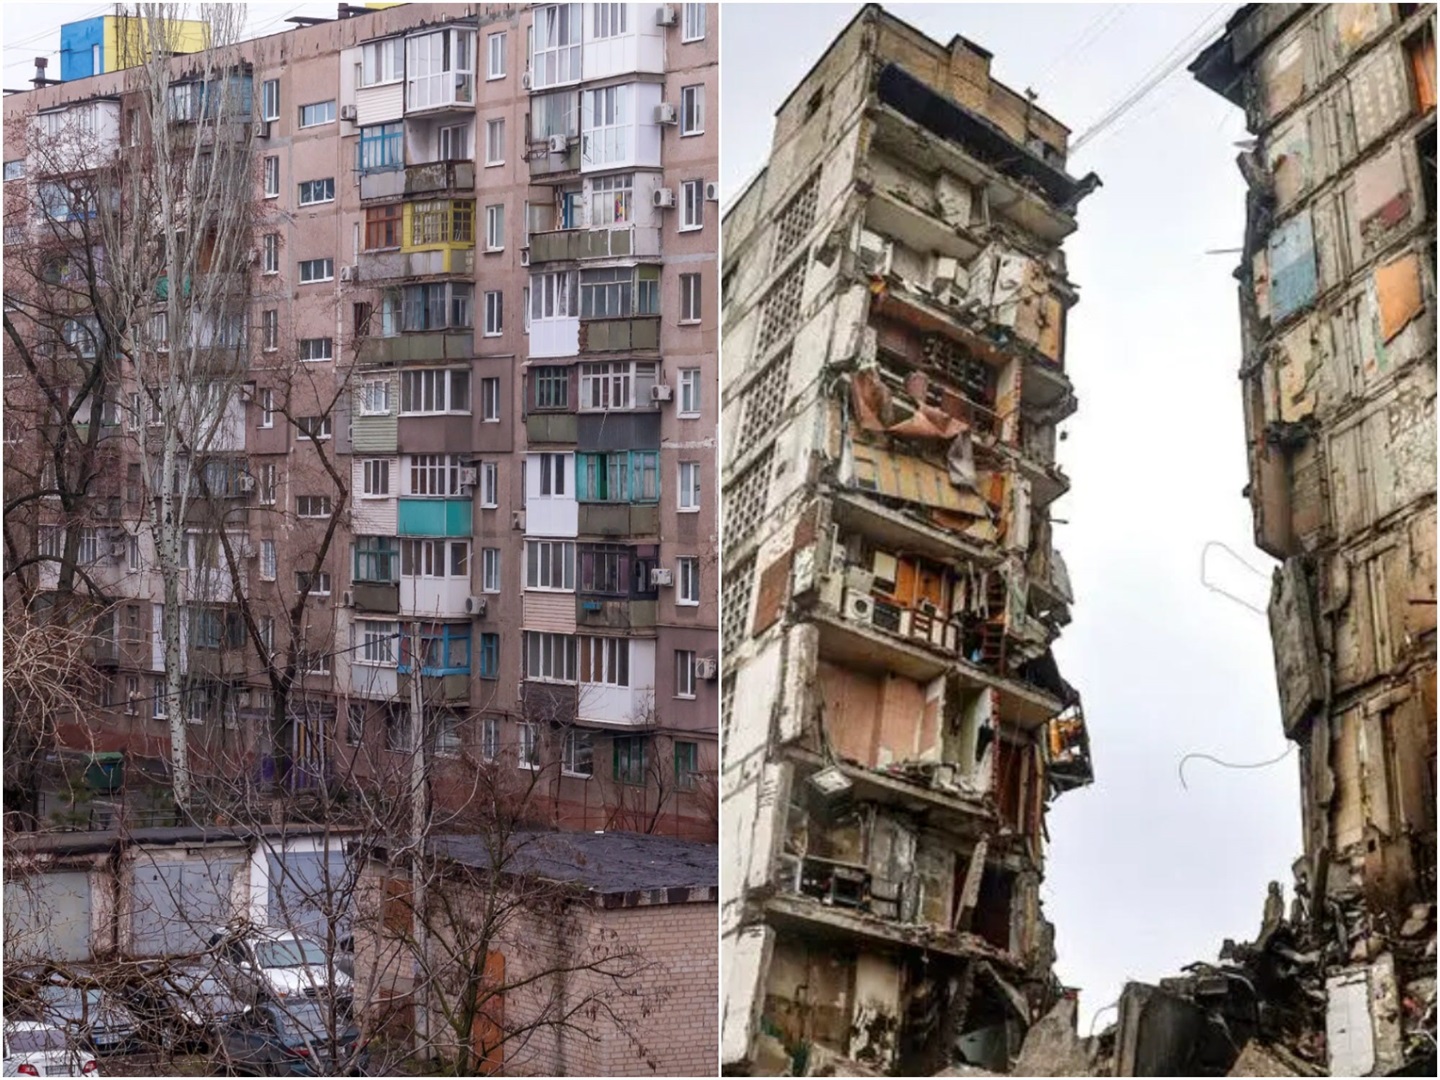 Öncesi ve sonrası fotoğrafları, Rusya'nın Mariupol'u nasıl moloz haline getirdiğini gösteriyor